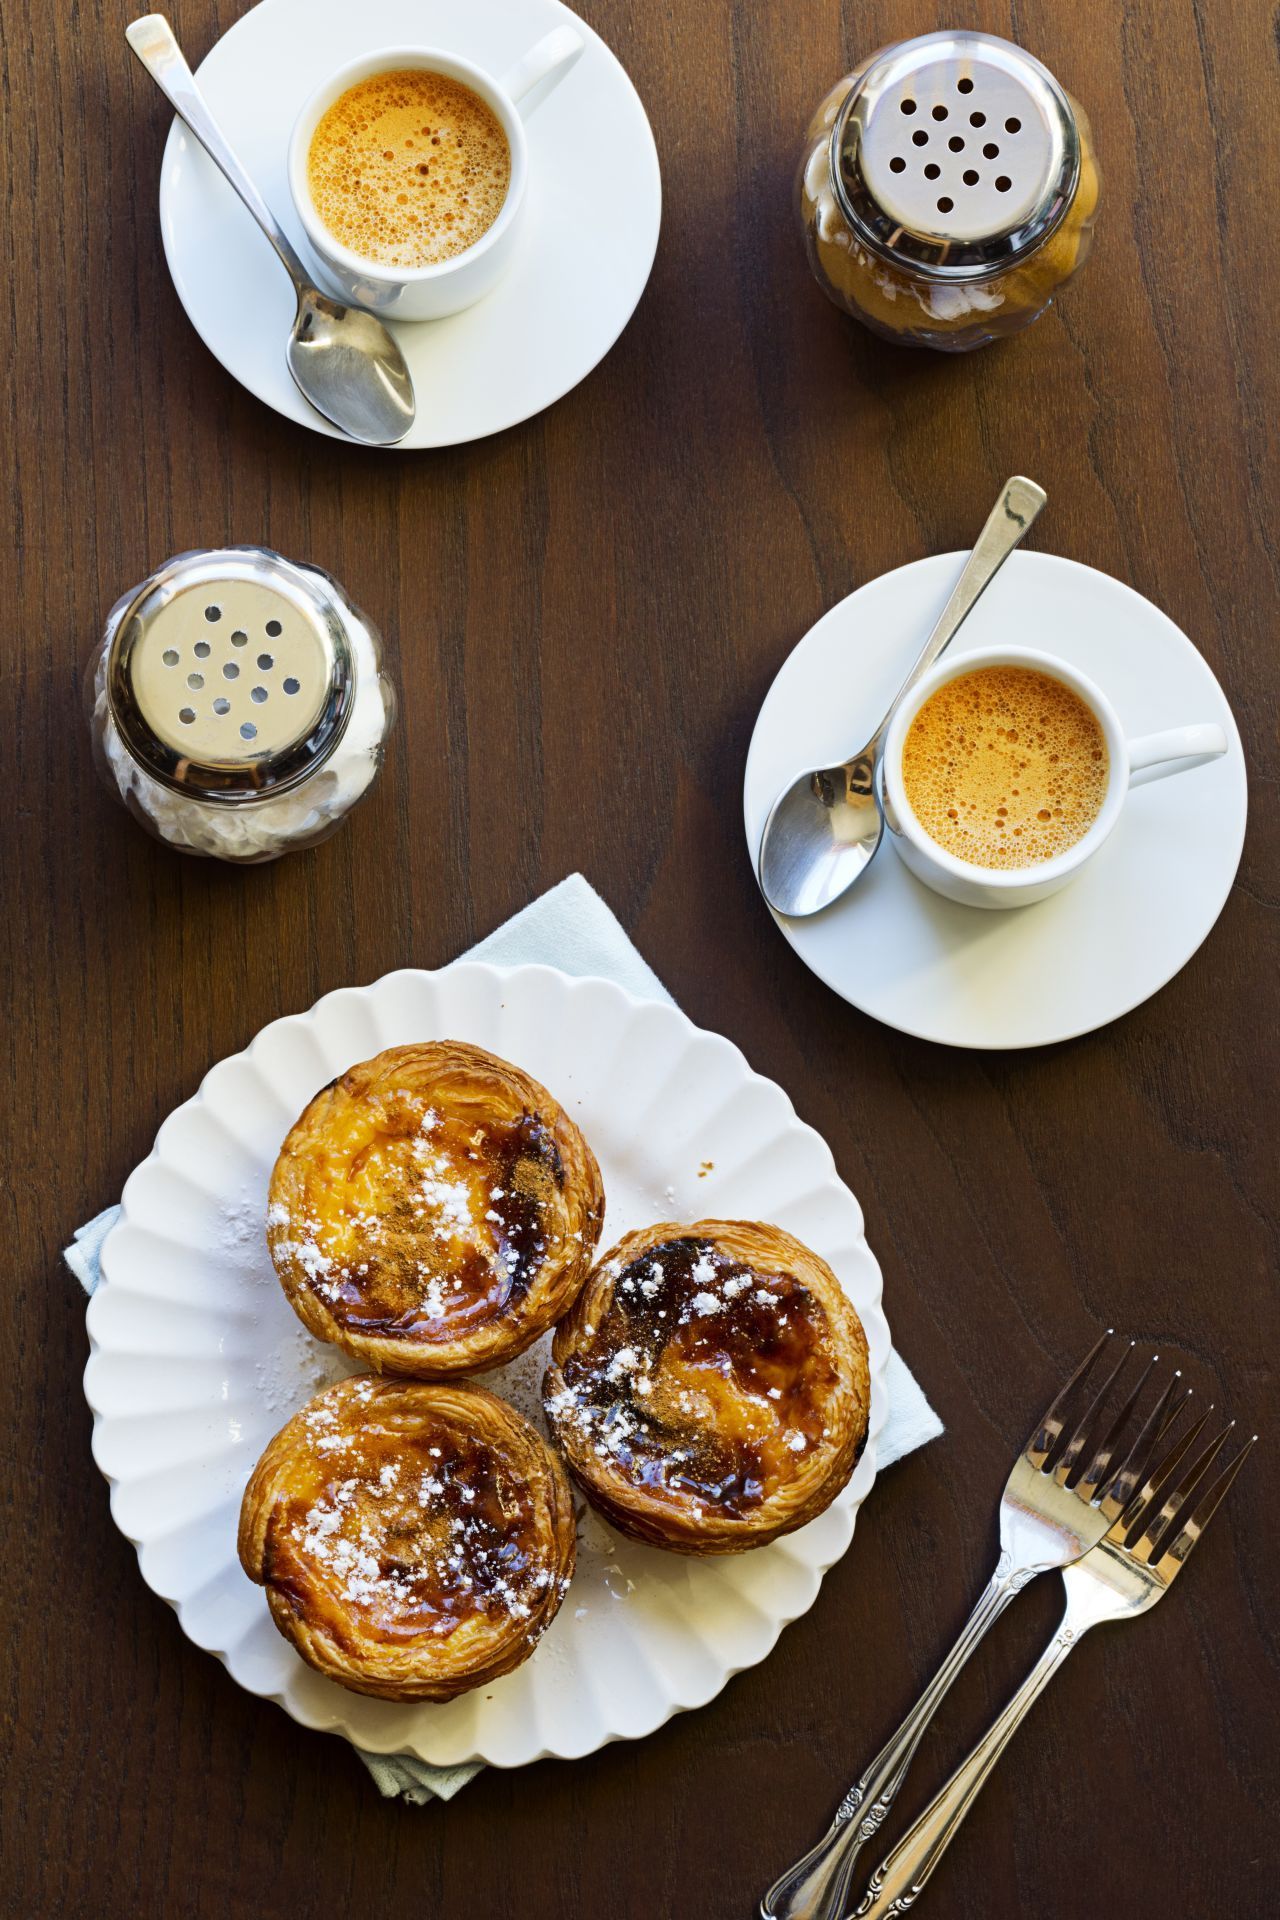 Diese kleinen Puddingtörtchen gibt es in Portugal. "Pastel de nata" ist Blätterteig gefüllt mit einer Vanille-Creme und wird traditionell mit Puderzucker oder Zimtzucker gegessen. Die Kunst ist hier vor allem das Back-Timing: Die Törtchen sollten im Ofen schön braun werden ohne zu verbrennen.